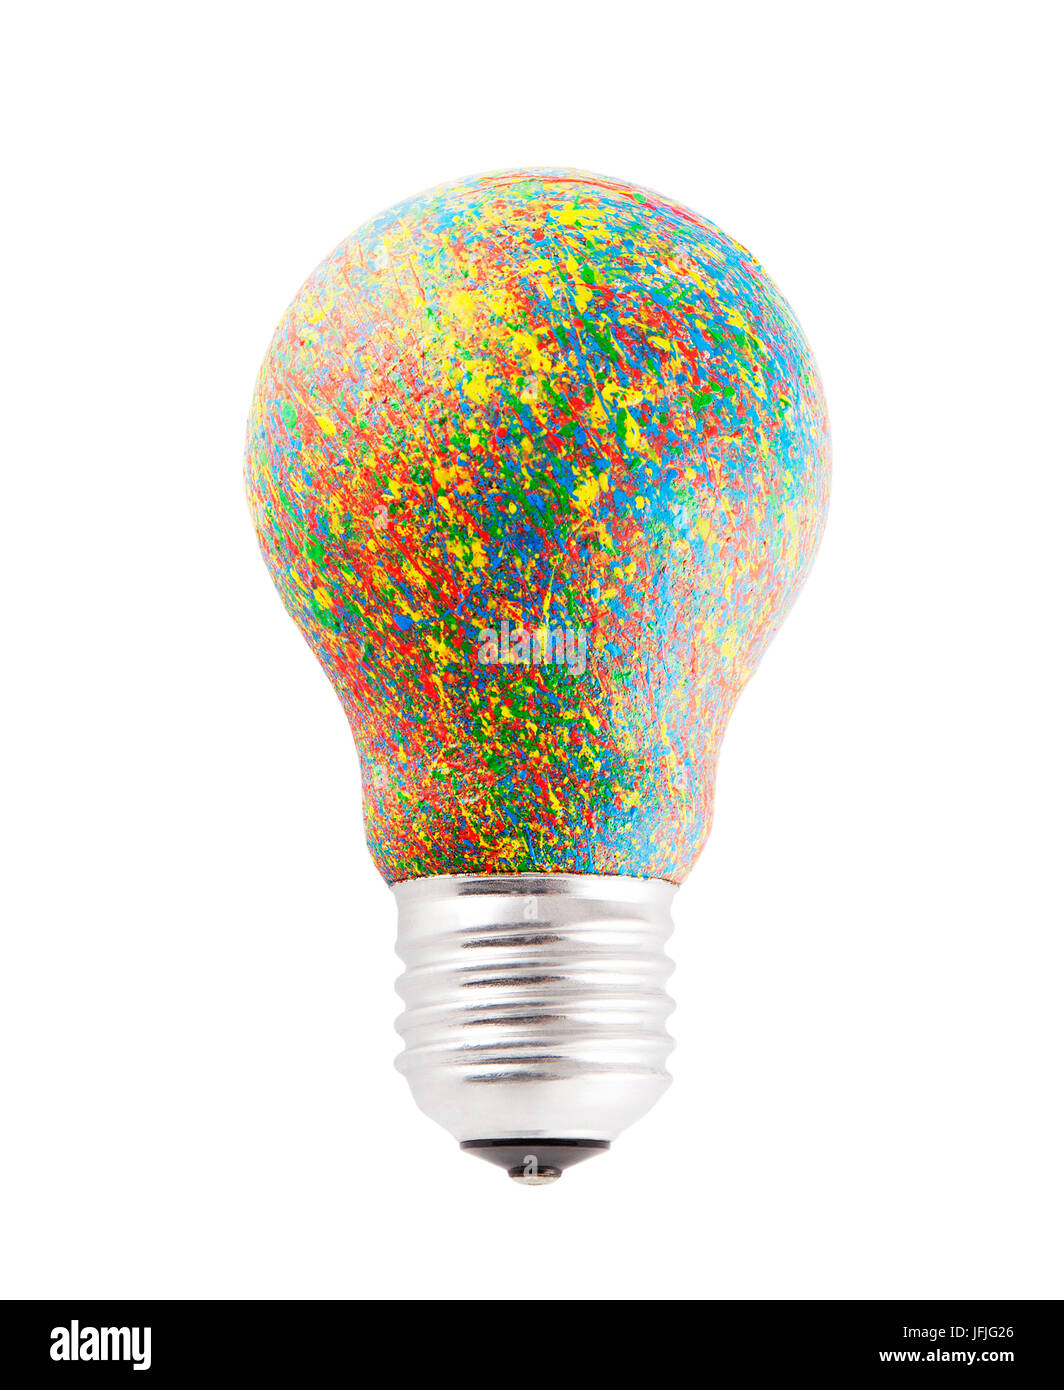 Peint en couleur de l'ampoule avec clipping path Banque D'Images